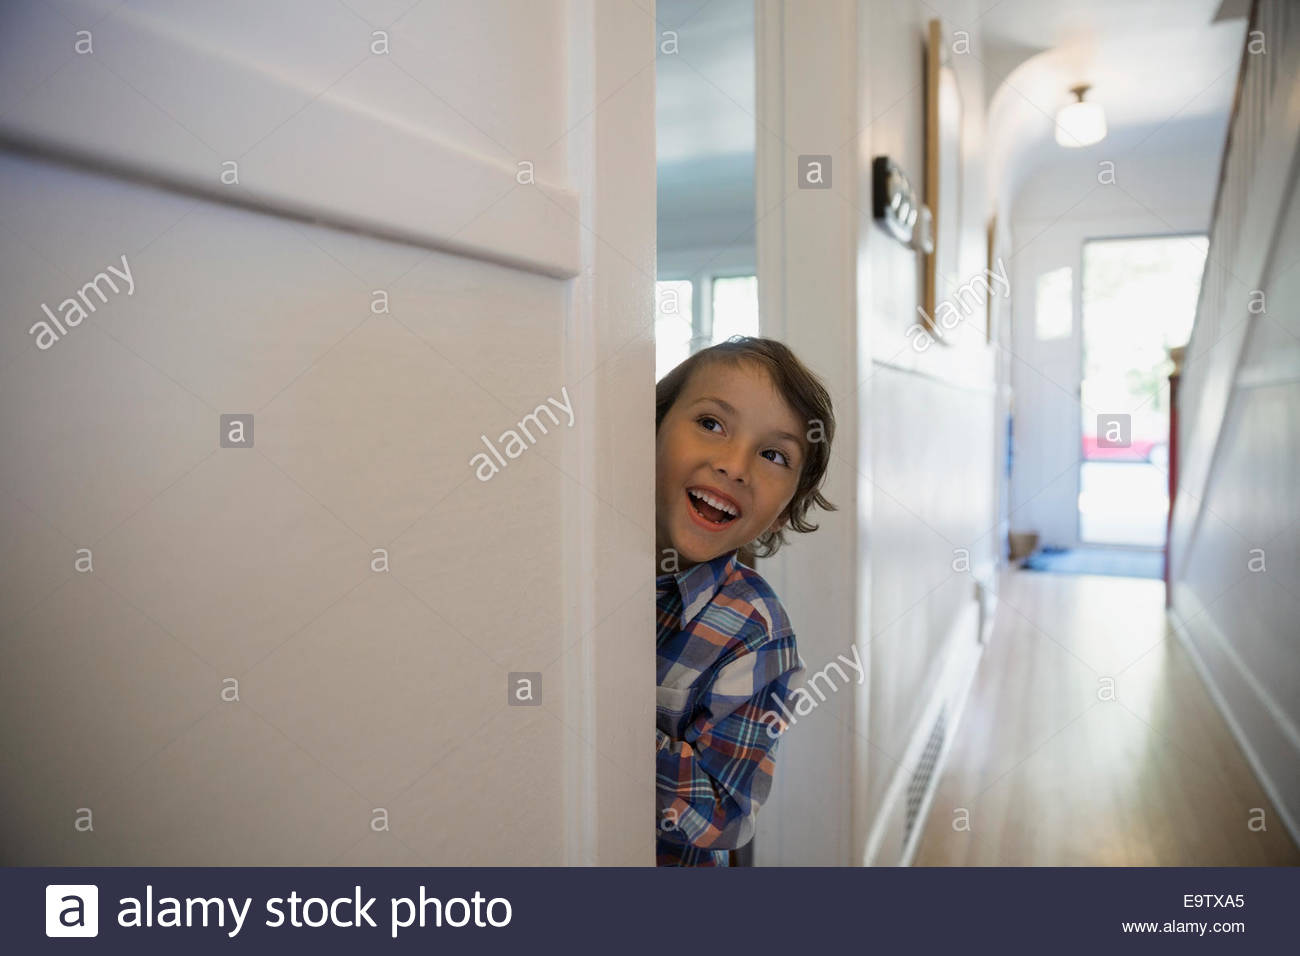 Excited boy in doorway Stock Photo